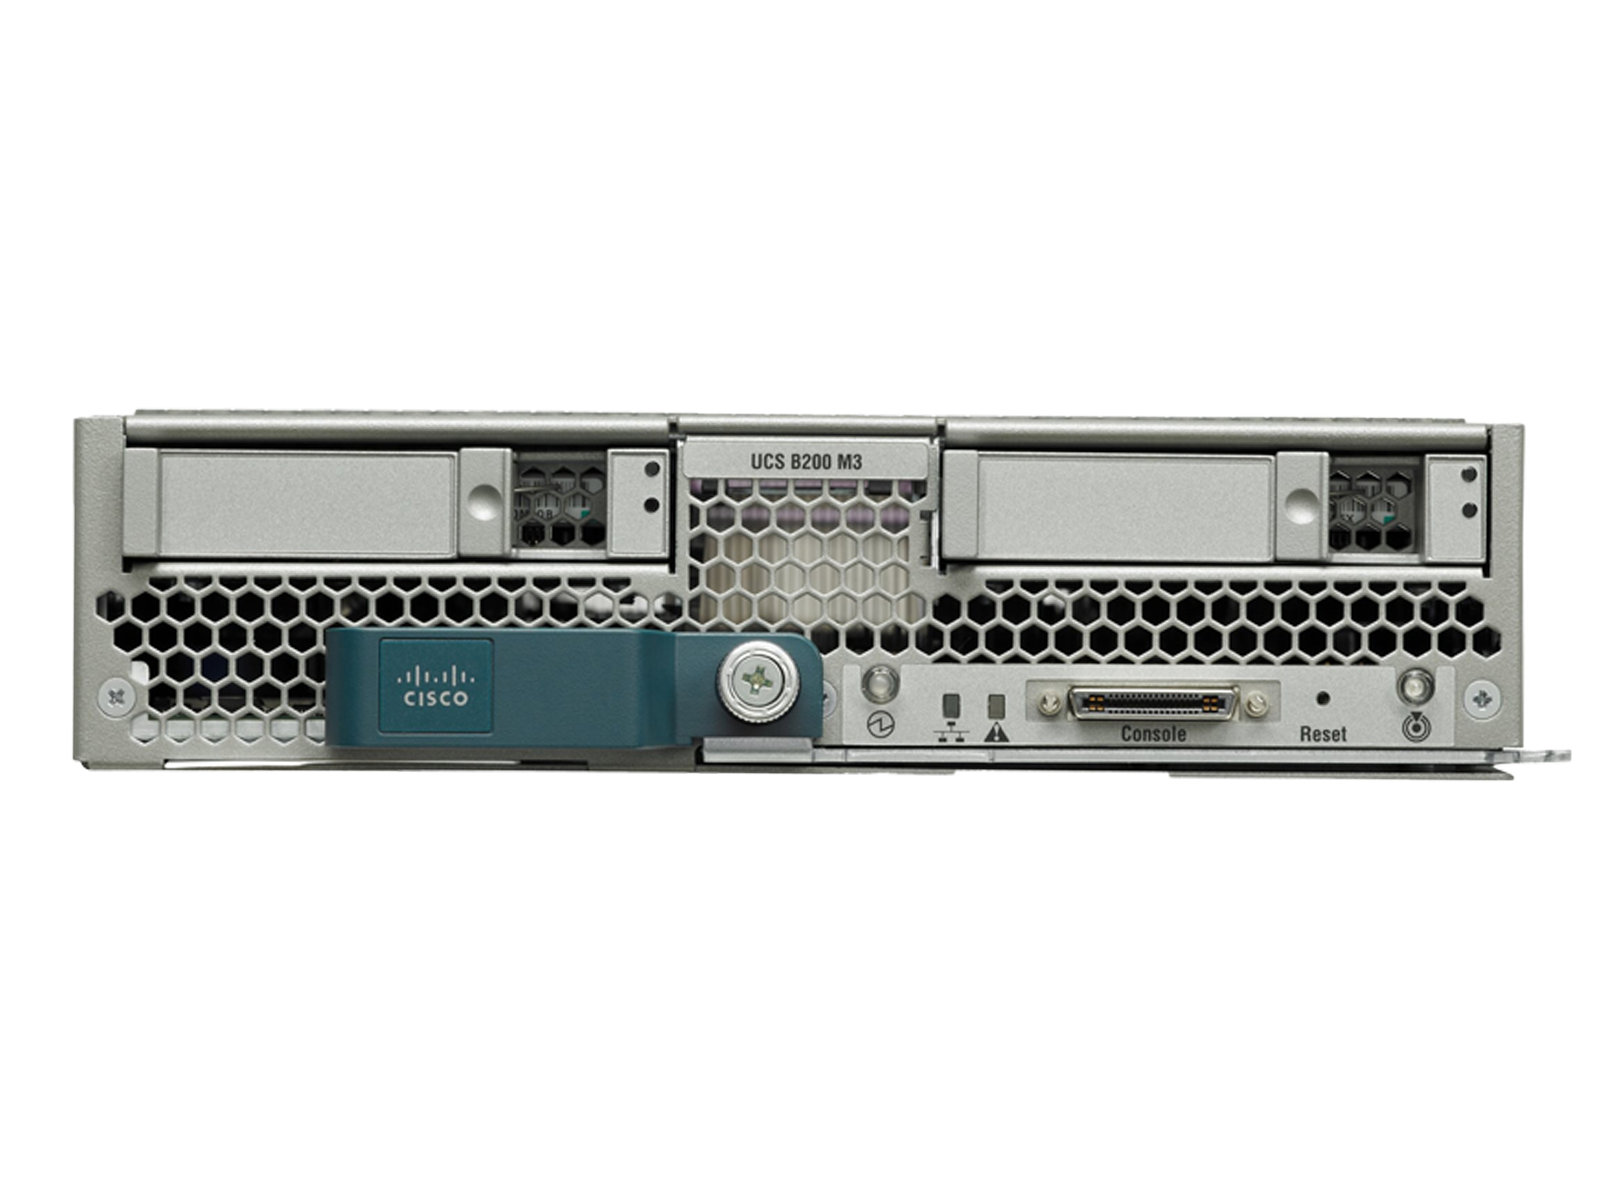 Cisco B200 M3 Blade Server Two E5-2667V2 512GB Ram VIC1240 2x 300GB 10K SAS HDD.